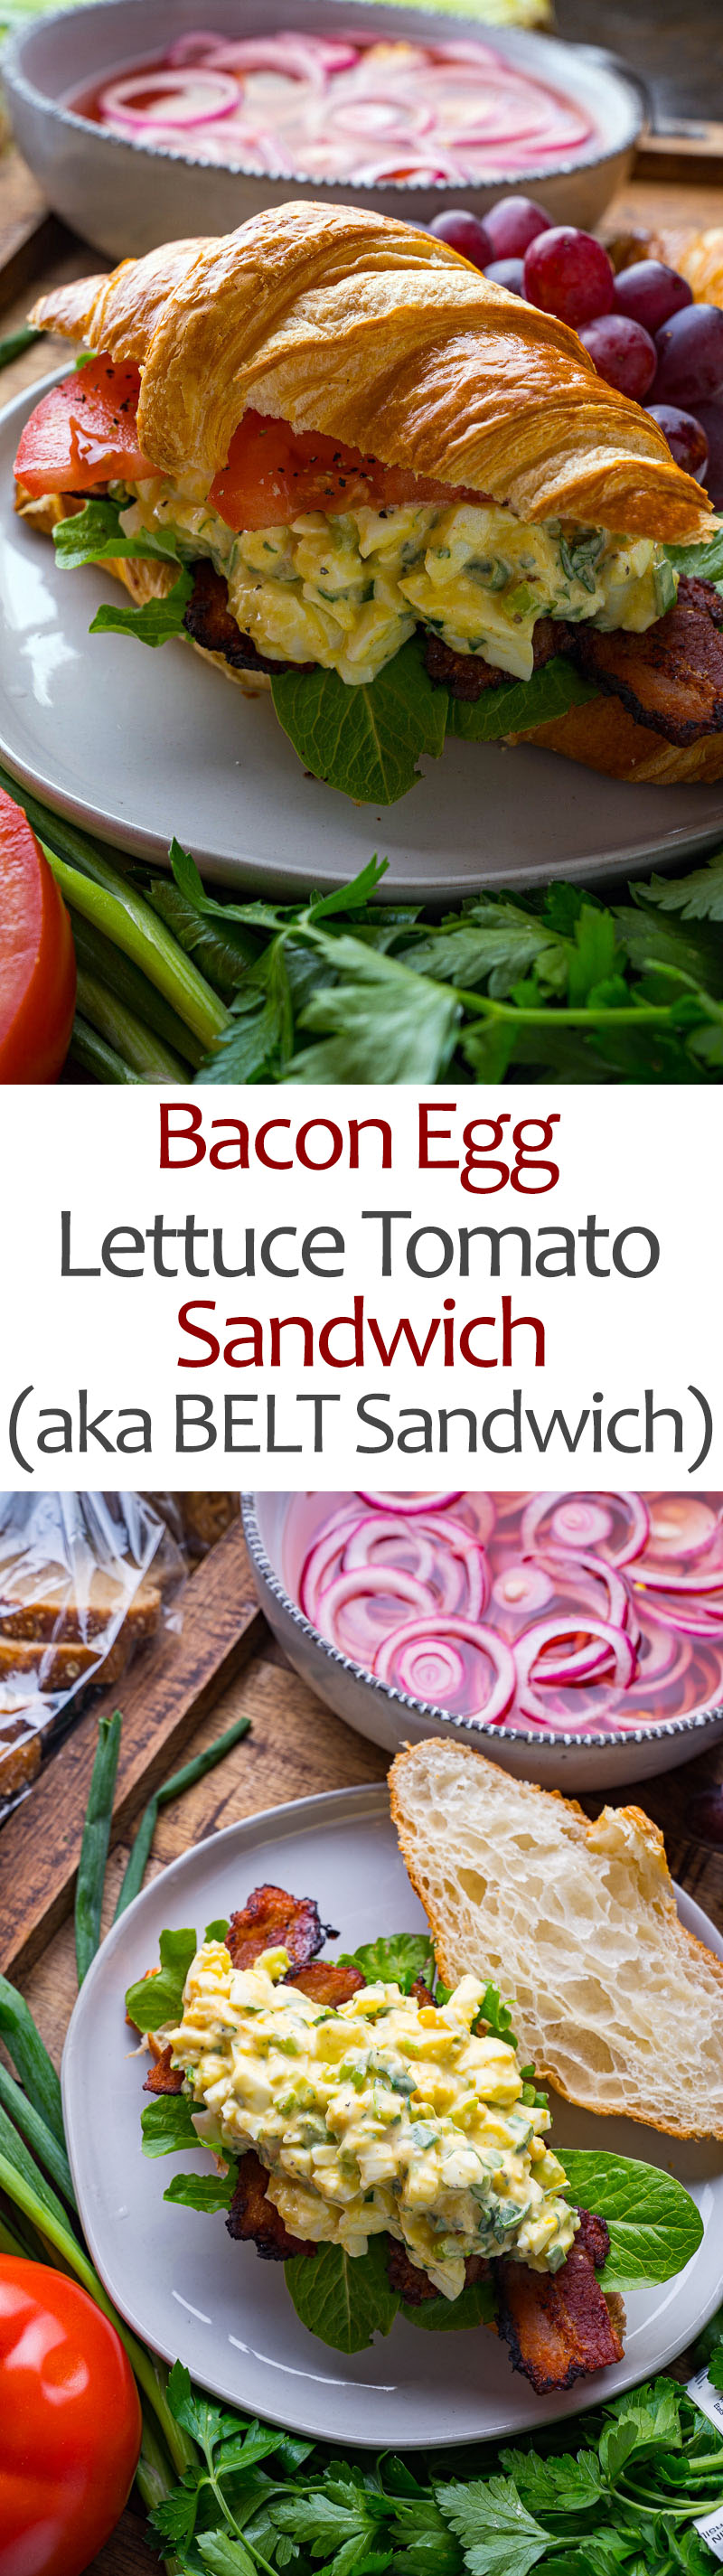 Bacon Egg Lettuce Tomato Sandwich (aka BELT Sandwich)